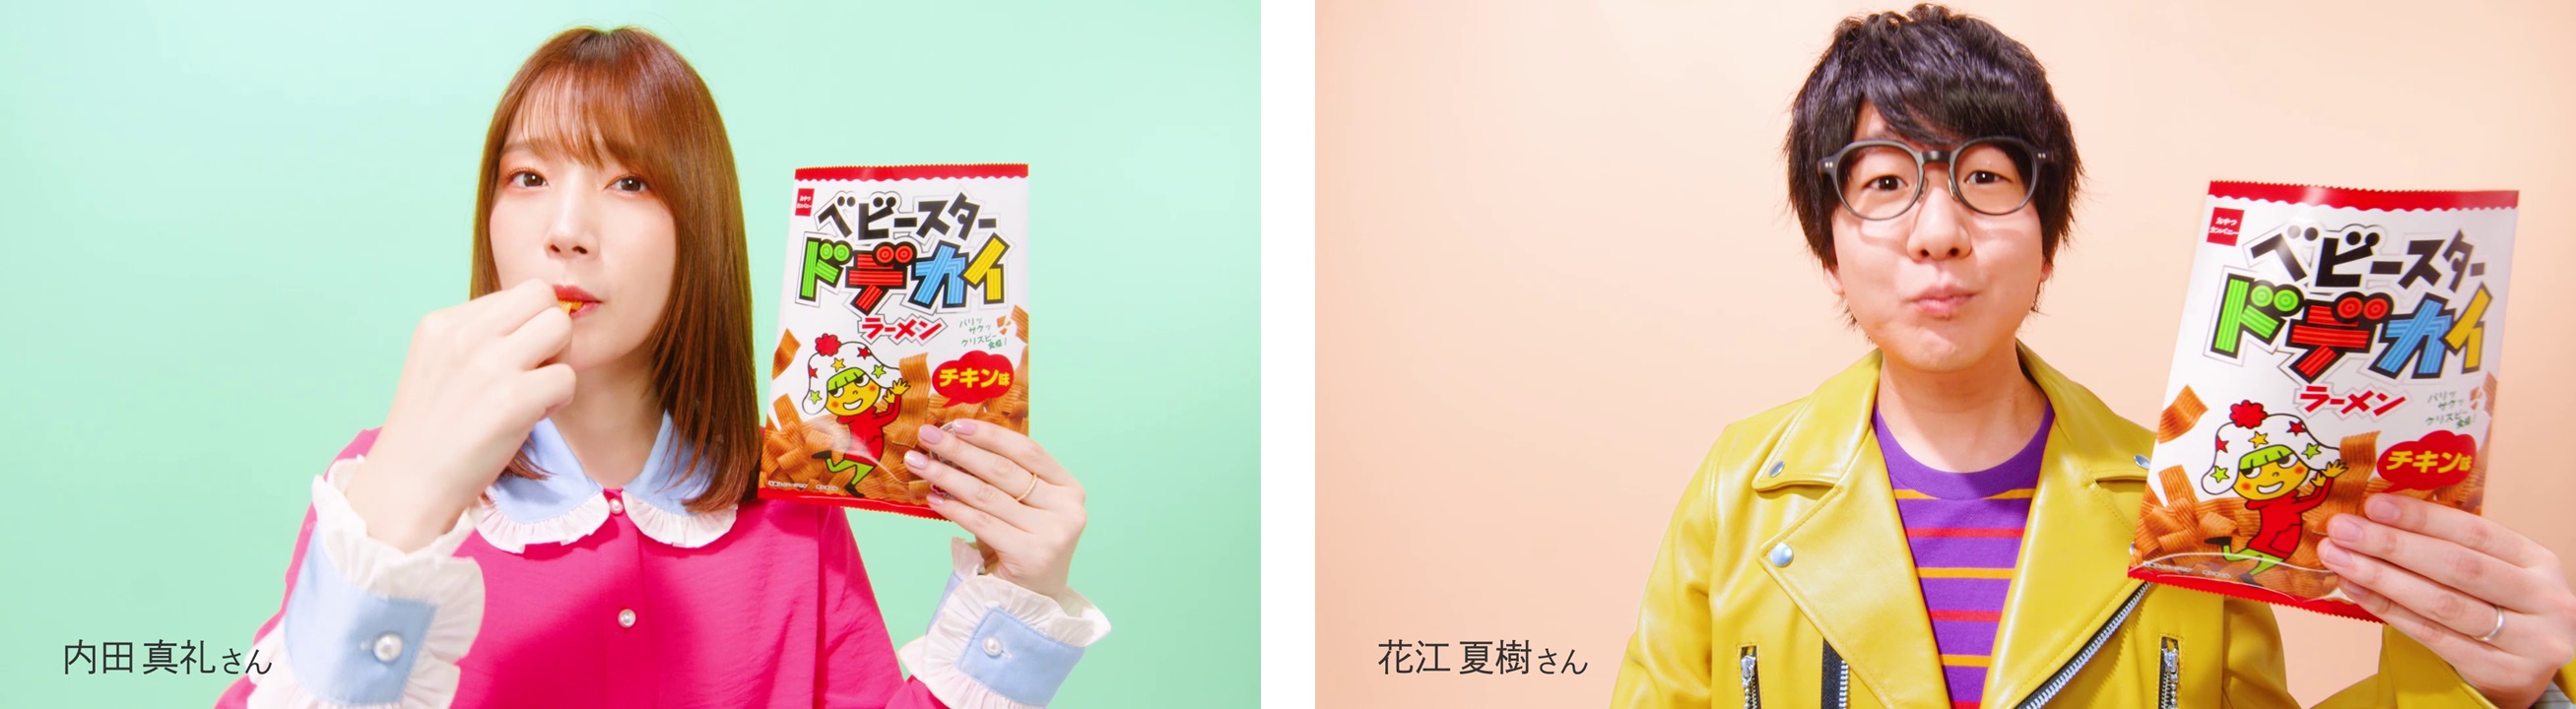 人気声優 内田真礼さん 花江夏樹さんが6秒実況 ドデカイラーメンの 秒で 美味しい新web動画 株式会社おやつカンパニーのプレスリリース